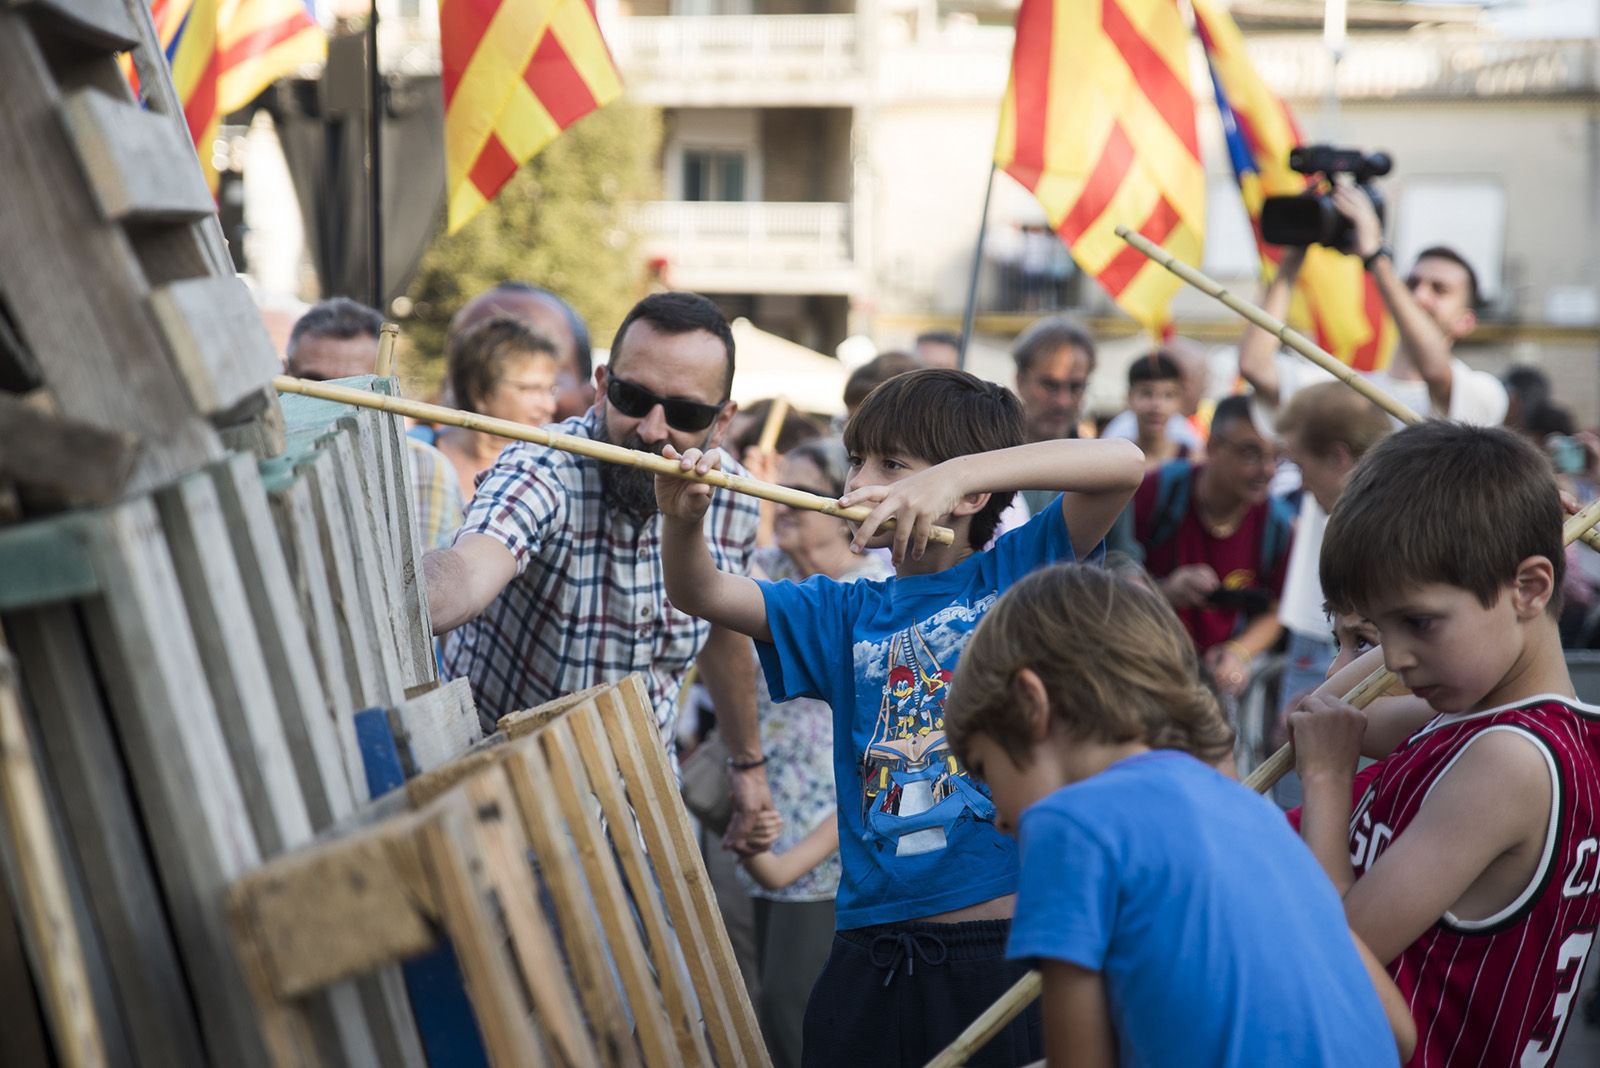 Rebuda de la Flama del Canigó amb el Ball d'homenatge i lectura del manifest, enguany escrit per Lluís Puig i Gordi. FOTO: Bernat Millet